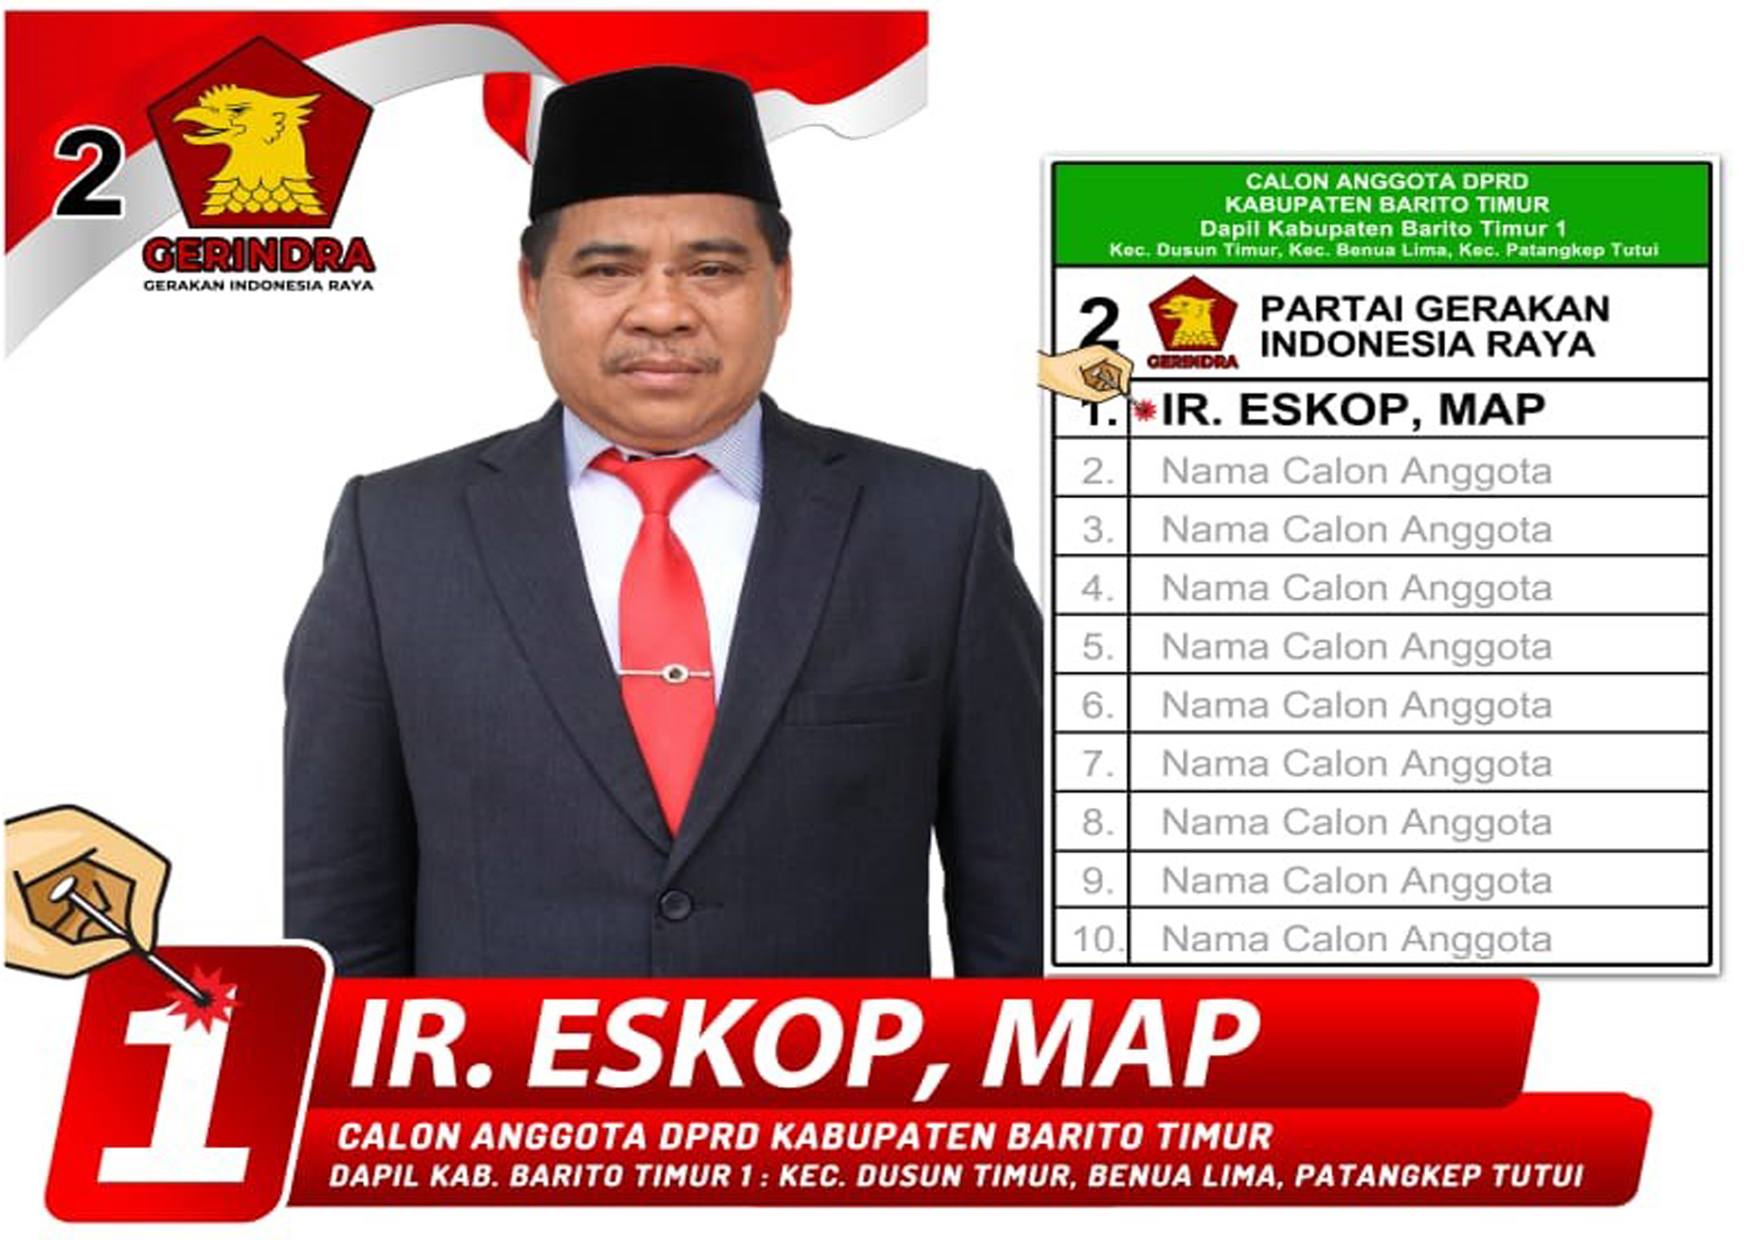 Mantan Sekda Barito Timur periode 2012-2020, Ir. Eskop, MAP mencalonkan diri menjadi Anggota DPRD Dapil Barito Timur 1. Dapil ini meliputi Kecamatan Dusun Timur, Benua Lima dan Kecamatan Patangkep Tutui.